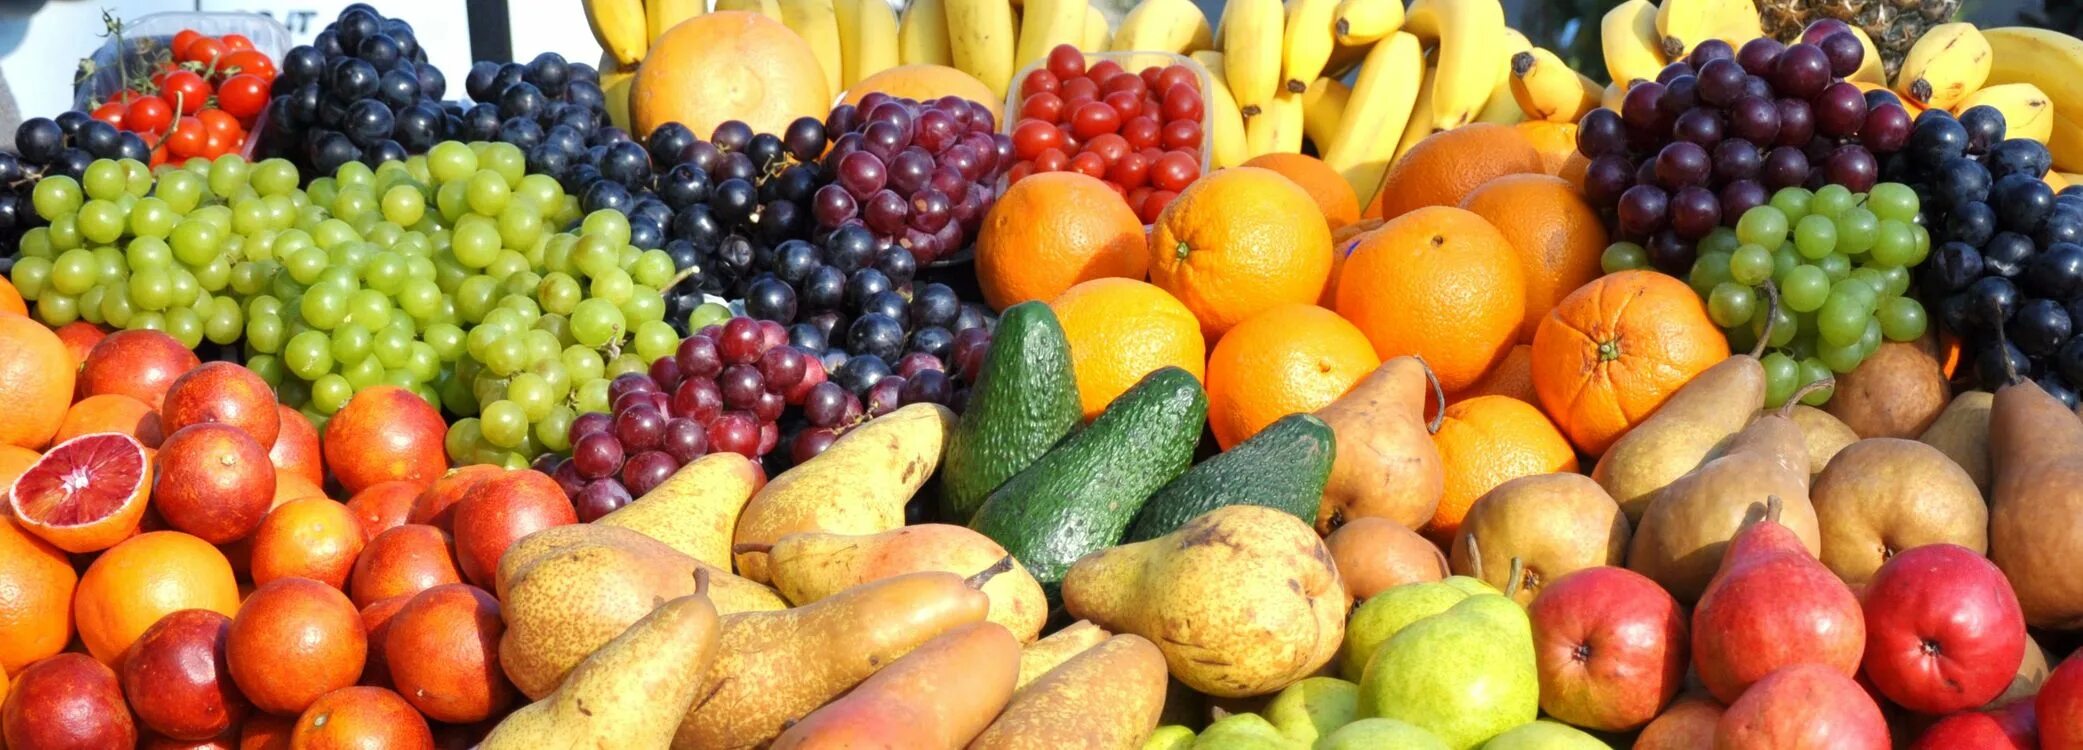 Овощи и фрукты. Фрукты. Фрукты овощи панорама. Овощи и ягоды.